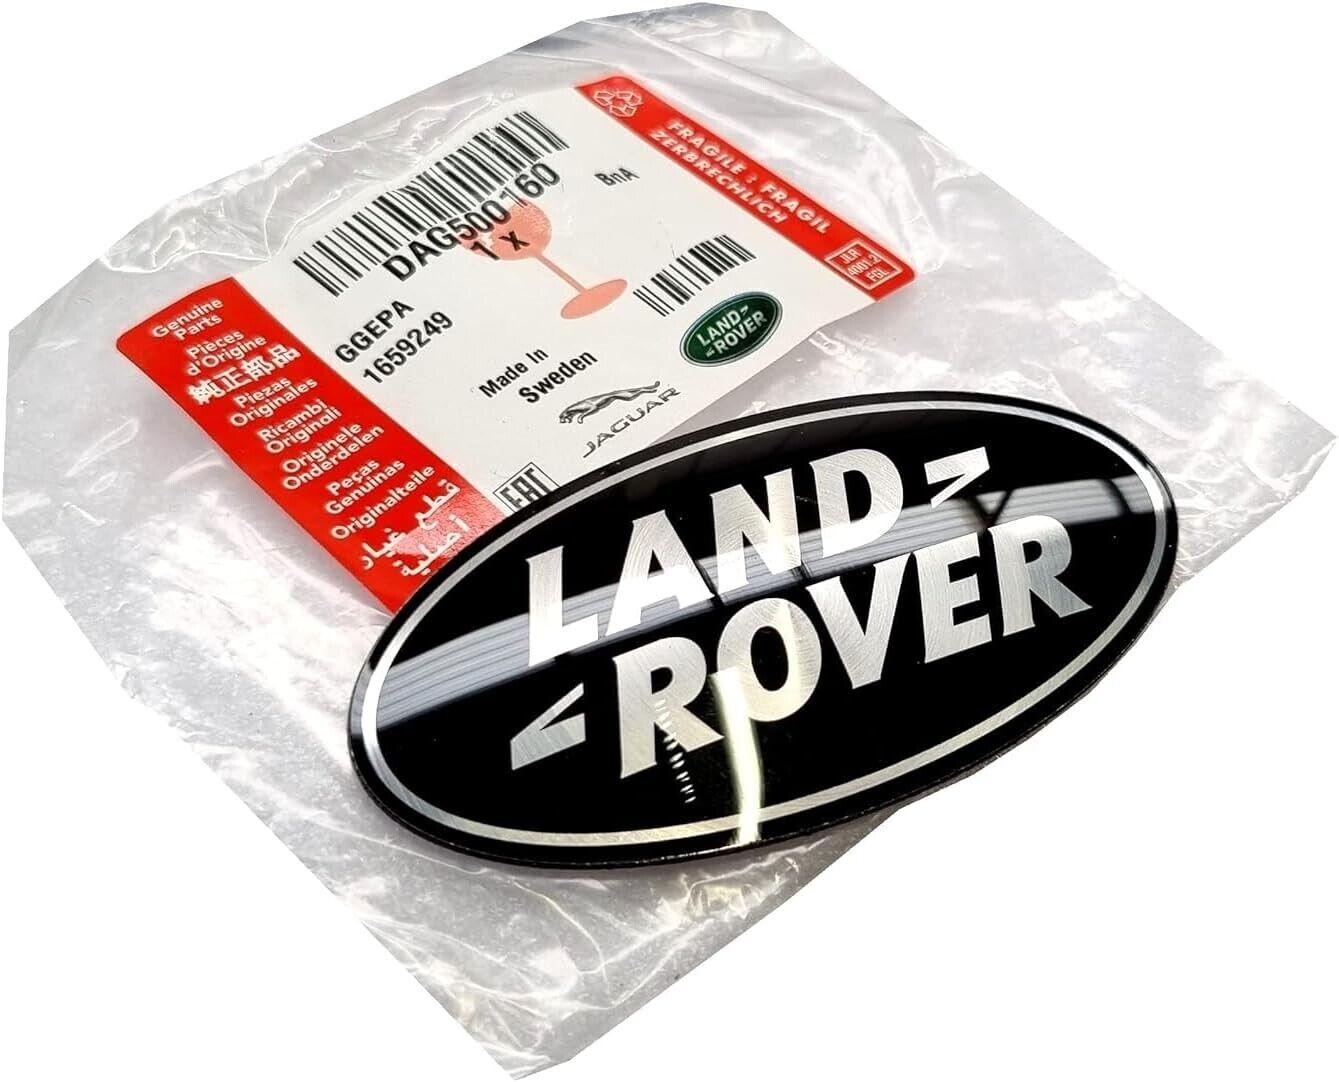 Genuine Land Rover Black Oval Front Grille Badge Emblem Range Rover DAG500160